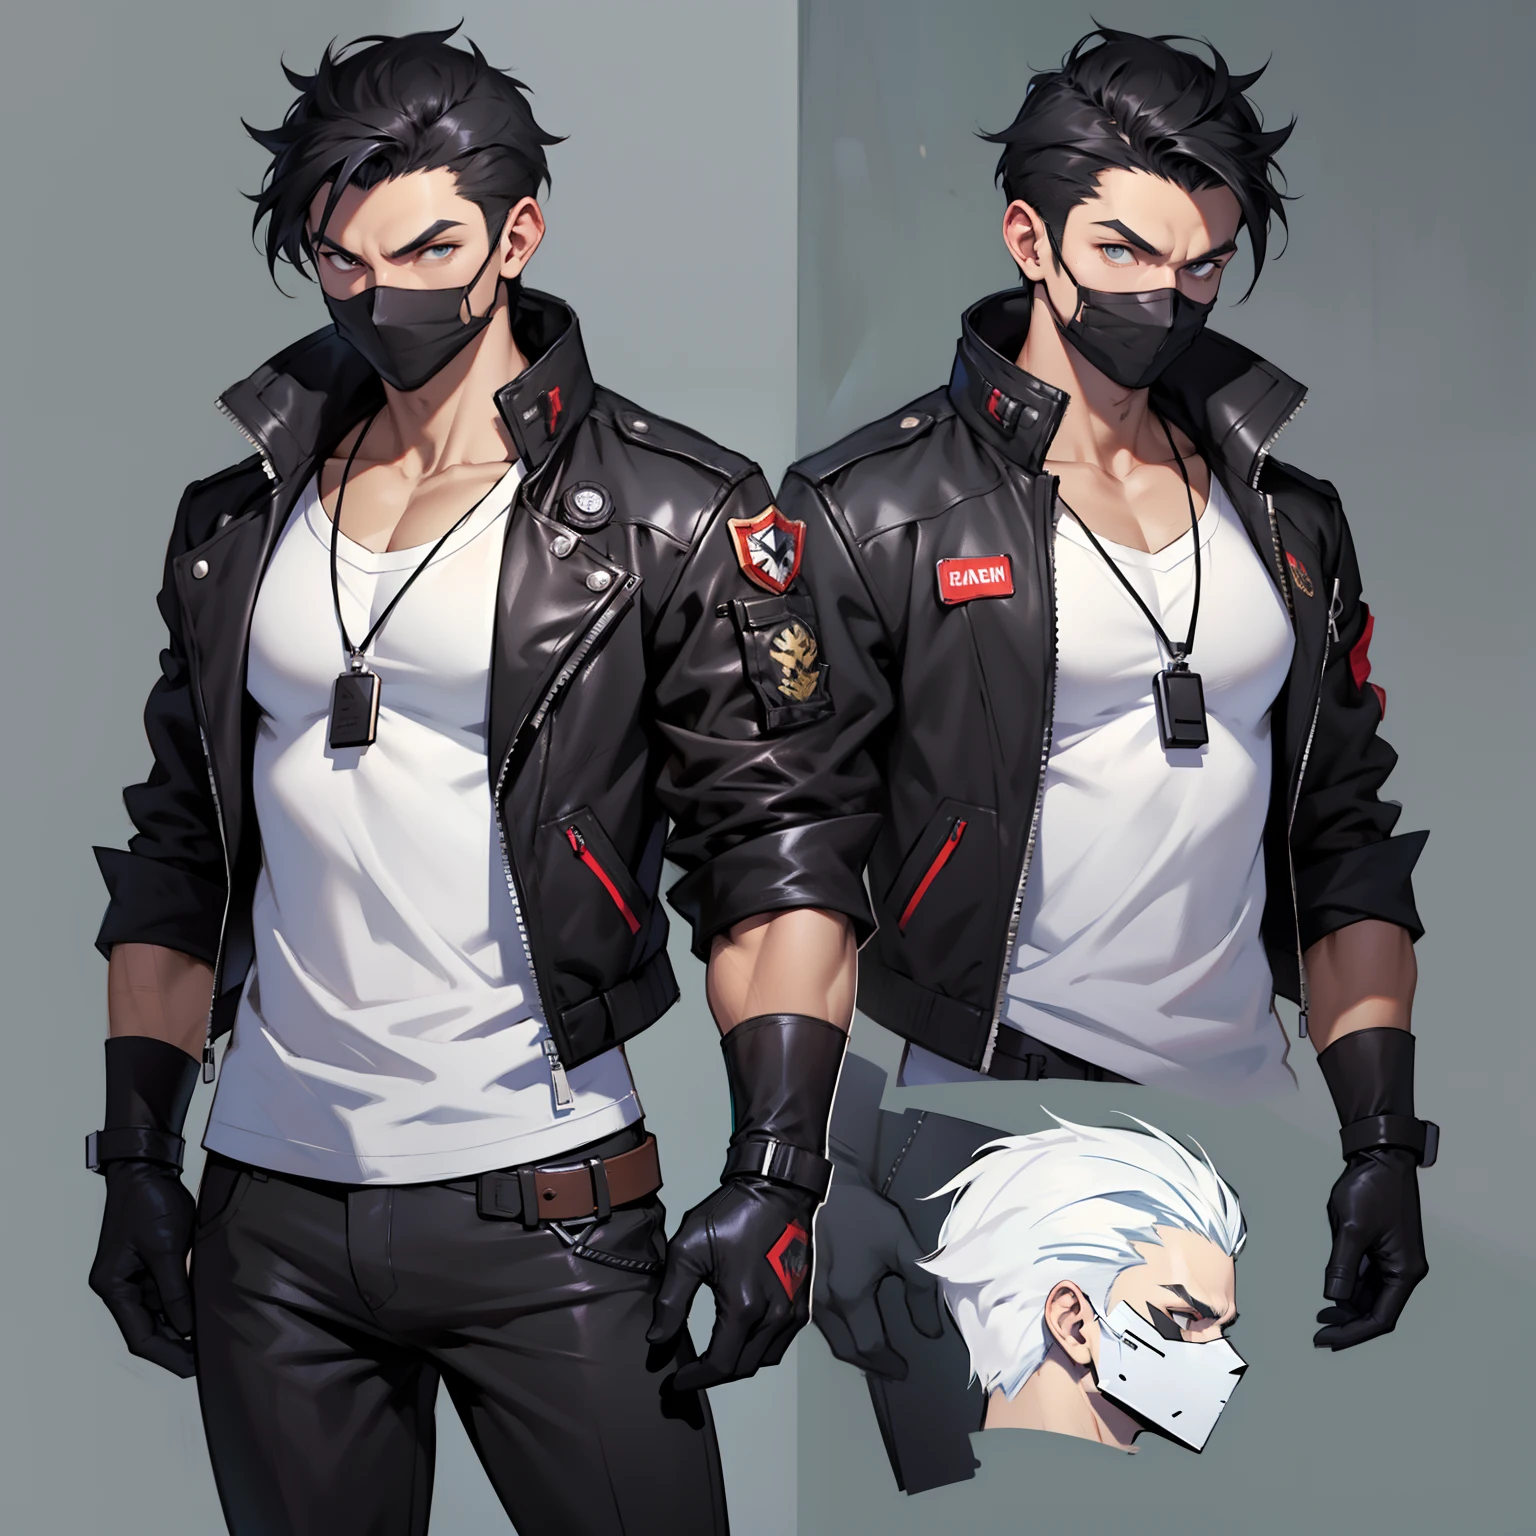 흰 셔츠에 검은 재킷을 입은 남자, 검은 천마스크 , pushed 뒤쪽에 black hair , ((캐릭터 컨셉 아트)), ((캐릭터 디자인 시트, 같은 캐릭터, 앞쪽, 옆, 뒤쪽에)) 메이플스토리 캐릭터 아트, 비디오 게임 캐릭터 디자인, 비디오 게임 캐릭터 디자인, 전문가의 높은 디테일 컨셉 아트, 금속 총알 컨셉 아트, 재미있는 캐릭터 디자인, 검은색 바지 ,그의 입에 검은 마스크 , 흰색 셔츠 위에 검은색 재킷 , 푸시백 이발 , 검은 장갑